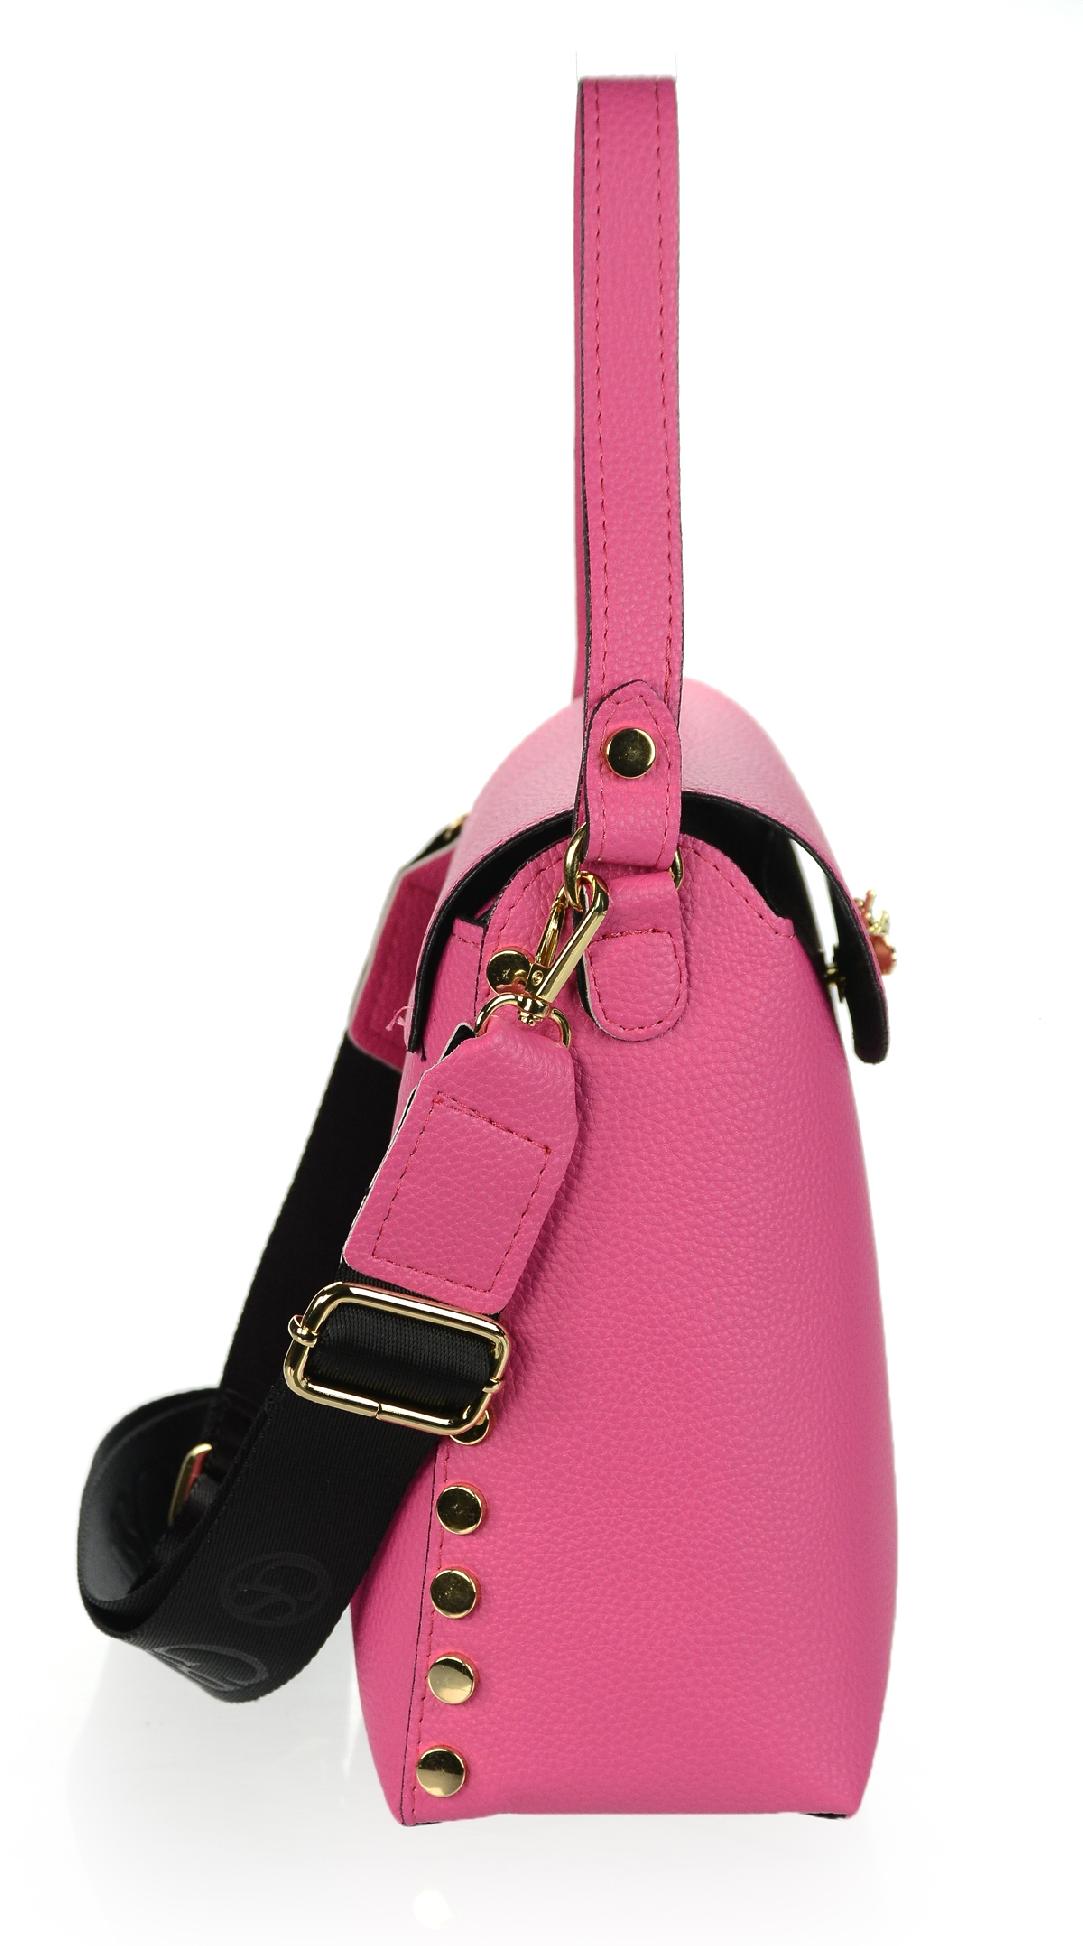 GROSSO štýlová ružová kabelka so zlatými doplnkami VERA pink